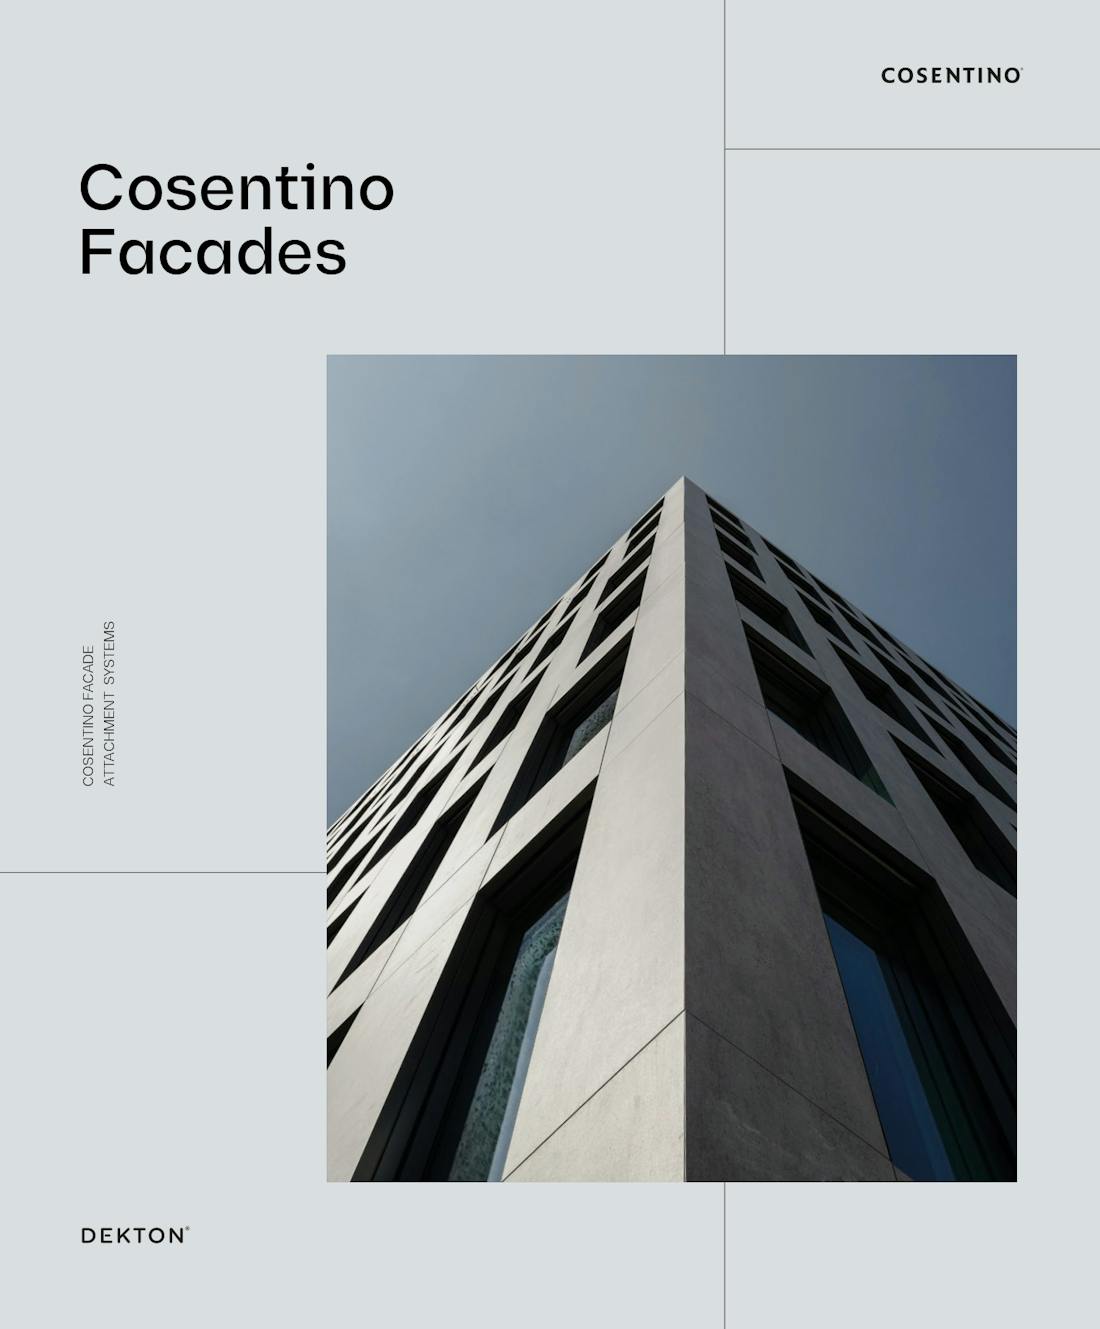 Bildnummer 55 des aktuellen Abschnitts von Excellence in ultra-compact facades von Cosentino Deutschland